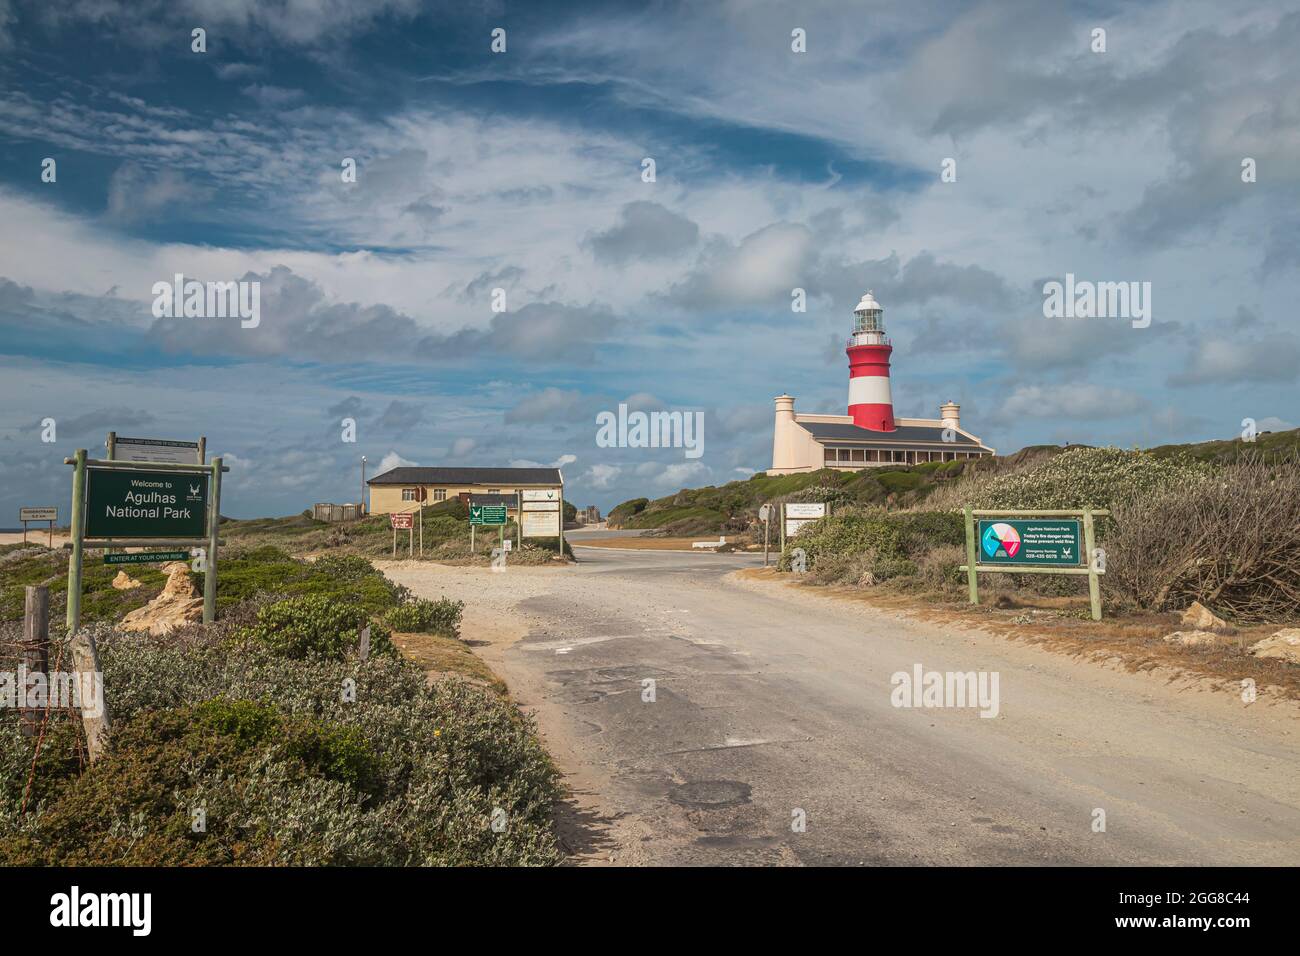 Una strada d'ingresso al Parco Nazionale di Capo Agulhas con il Faro di Capo Agulhas sullo sfondo, che è il punto più meridionale del continente africano. Foto Stock